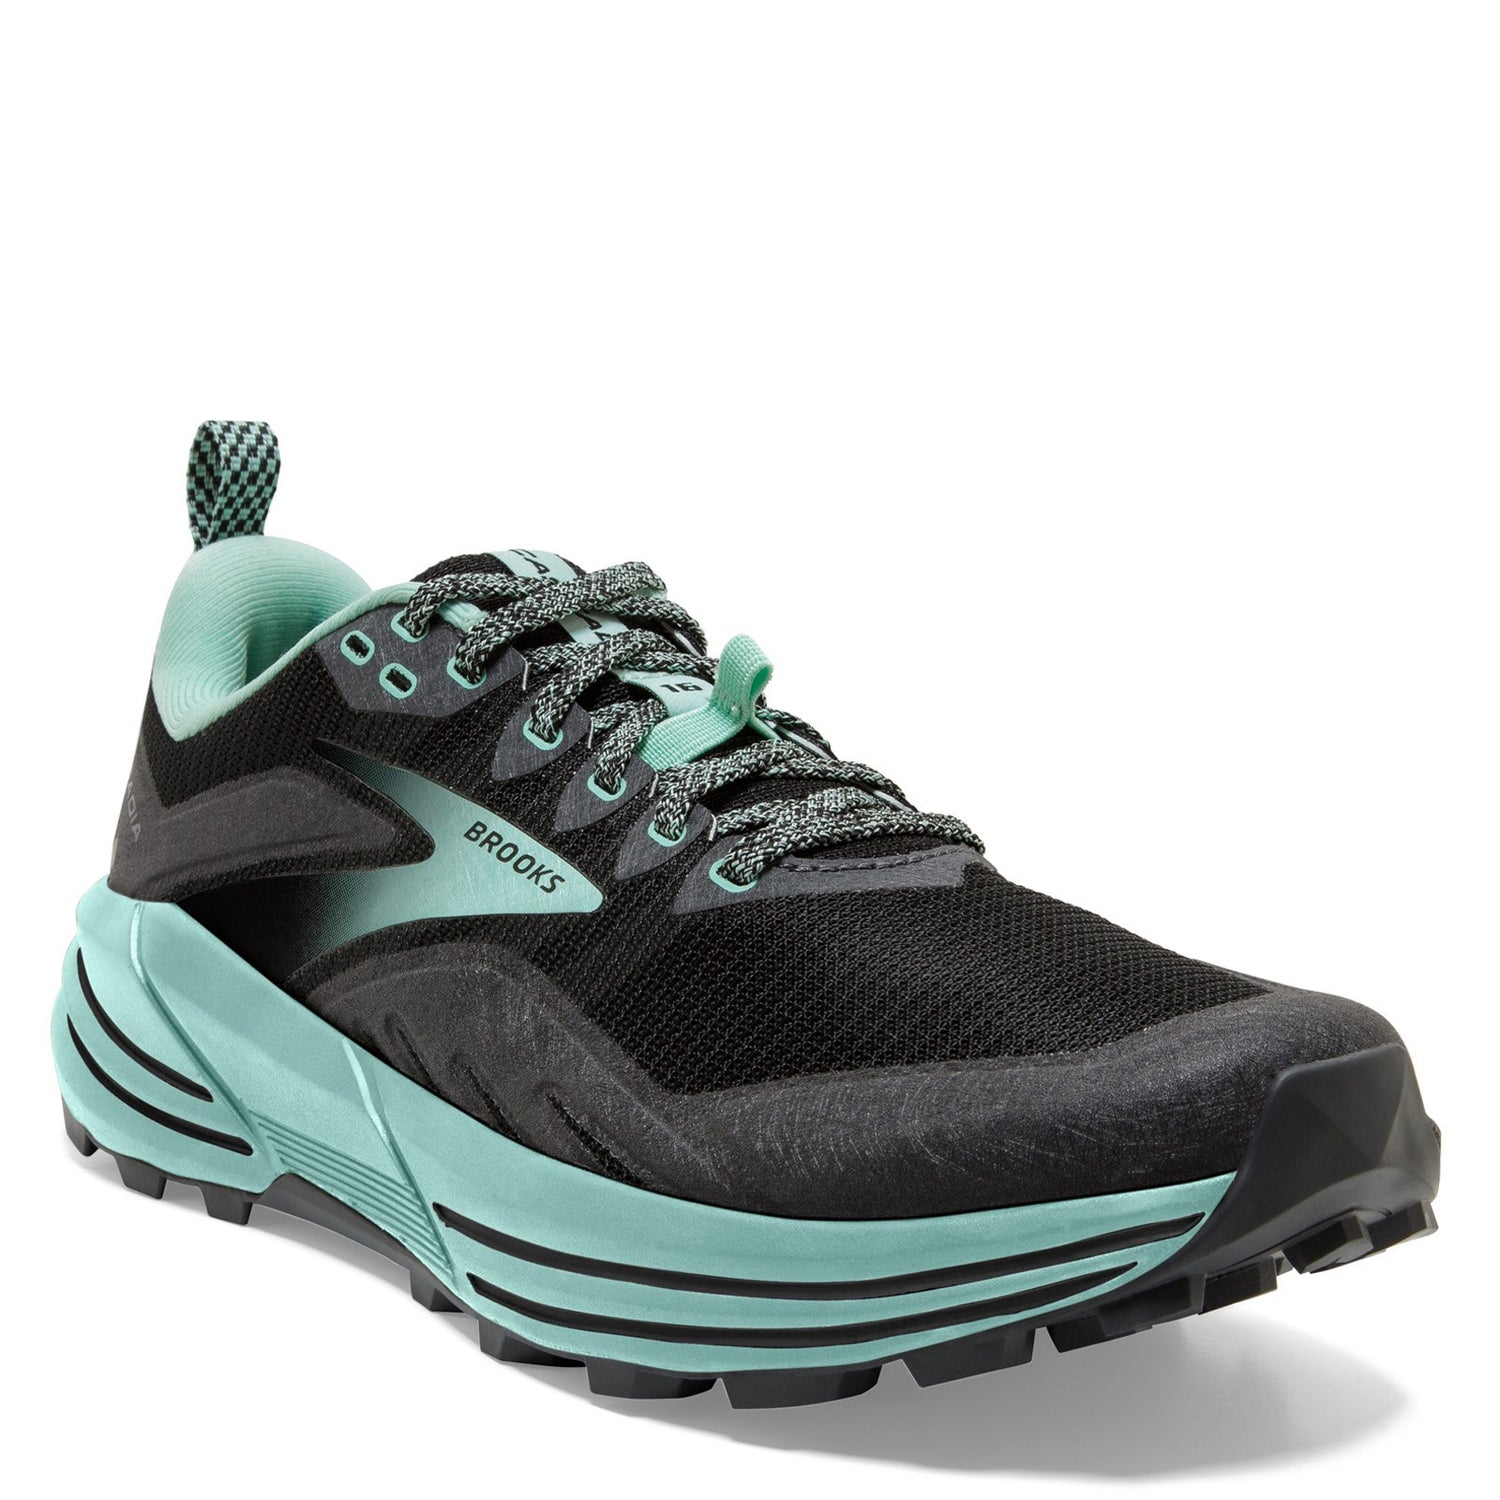 Peltz Shoes  Women's Brooks Cascadia 16 Trail Running Shoe - Wide Width Black/Ebony/Yucca 120363 1D 049